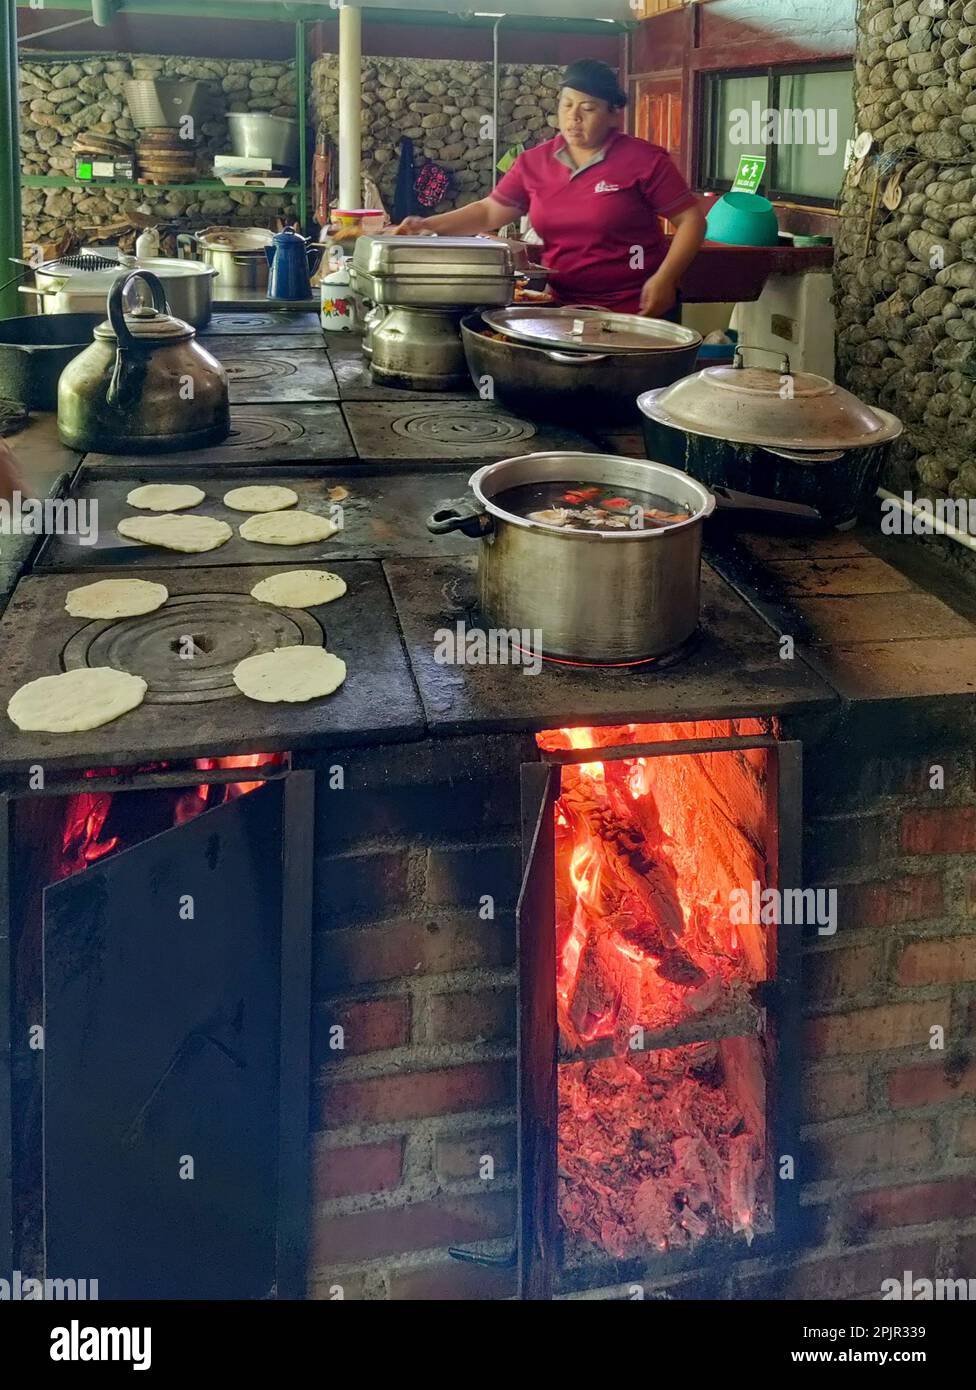 La Fortuna, Costa Rica - pranzo in cucina su una stufa a legna alla Finca educativa Don Juan (Don Juan Educational Farm). Gli ospiti aiutano a preparare il pasto, Foto Stock